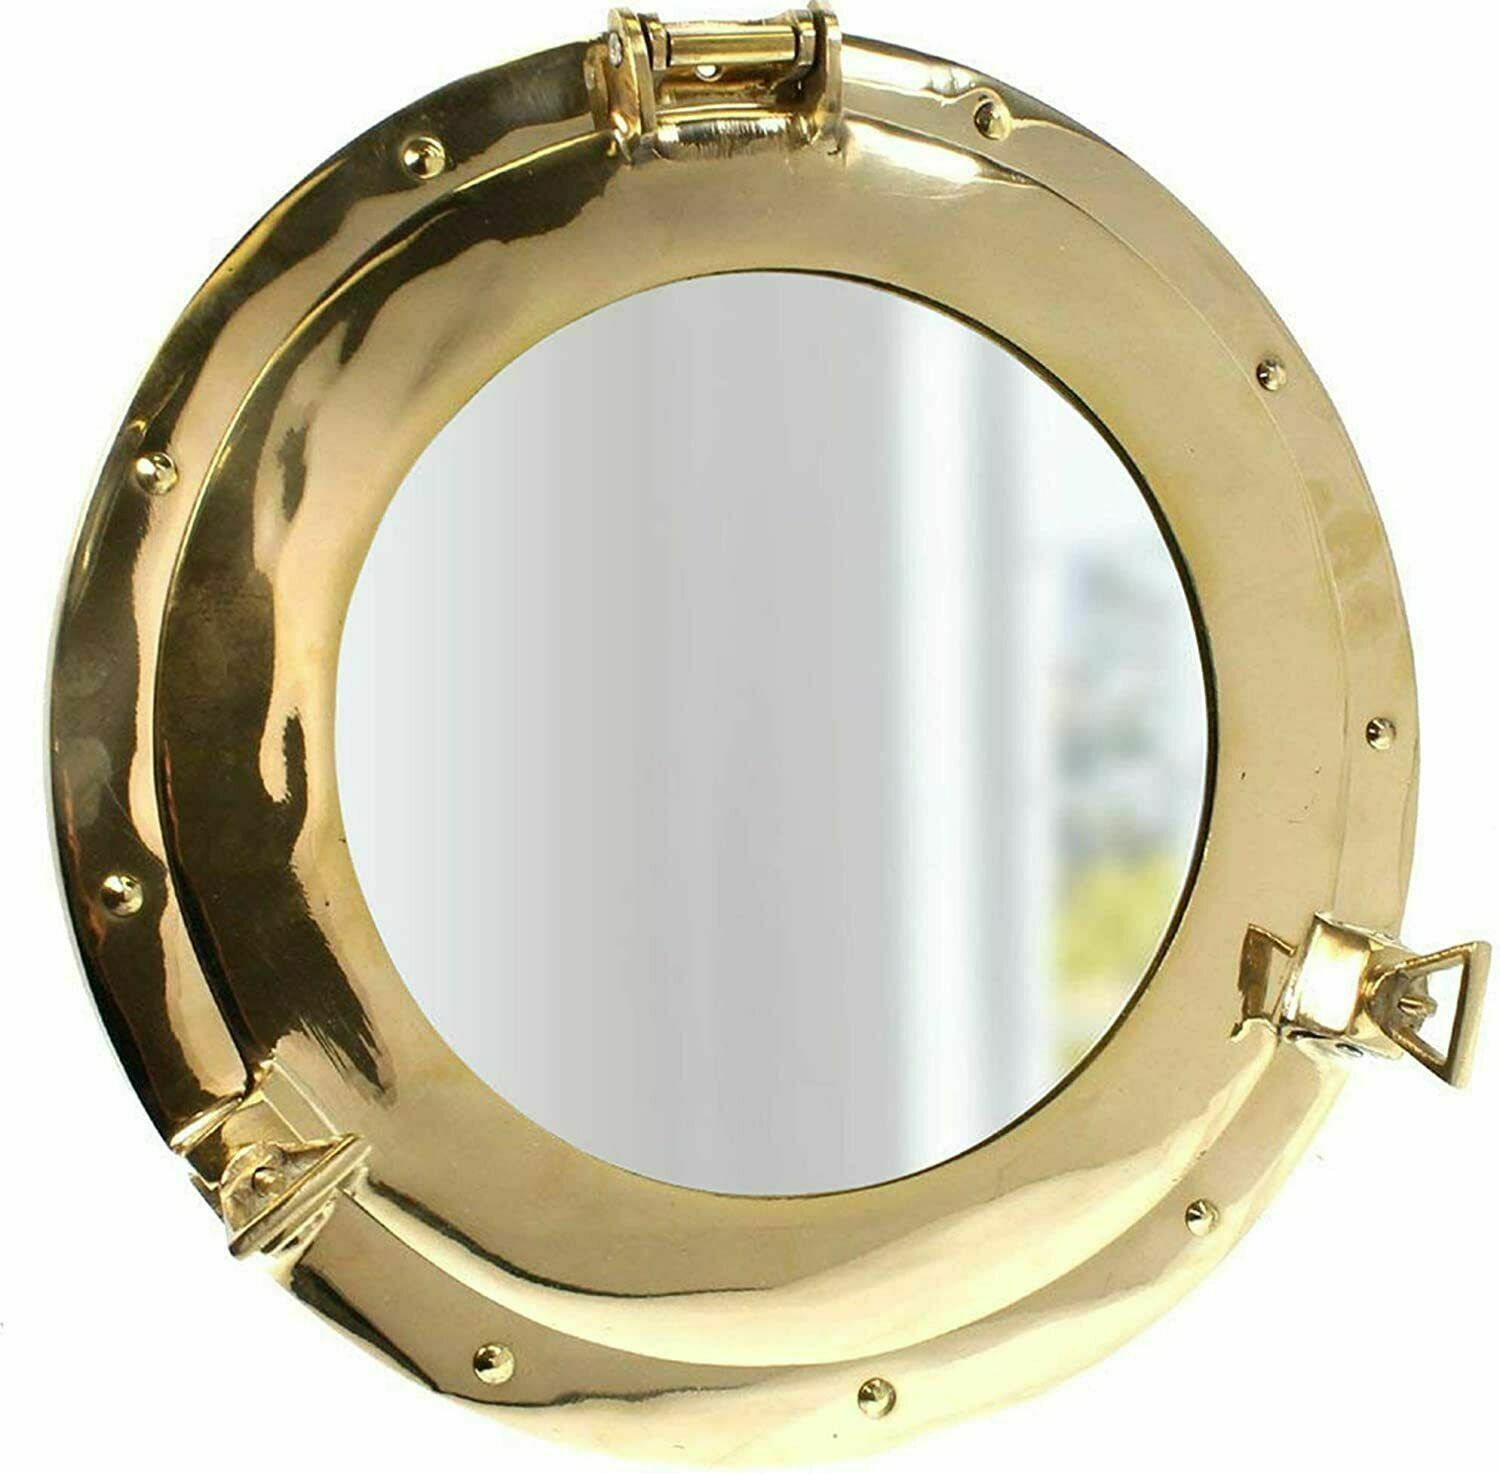 Nautical 9 inches brass porthole Maritime Boat Window Premium quality Porthole